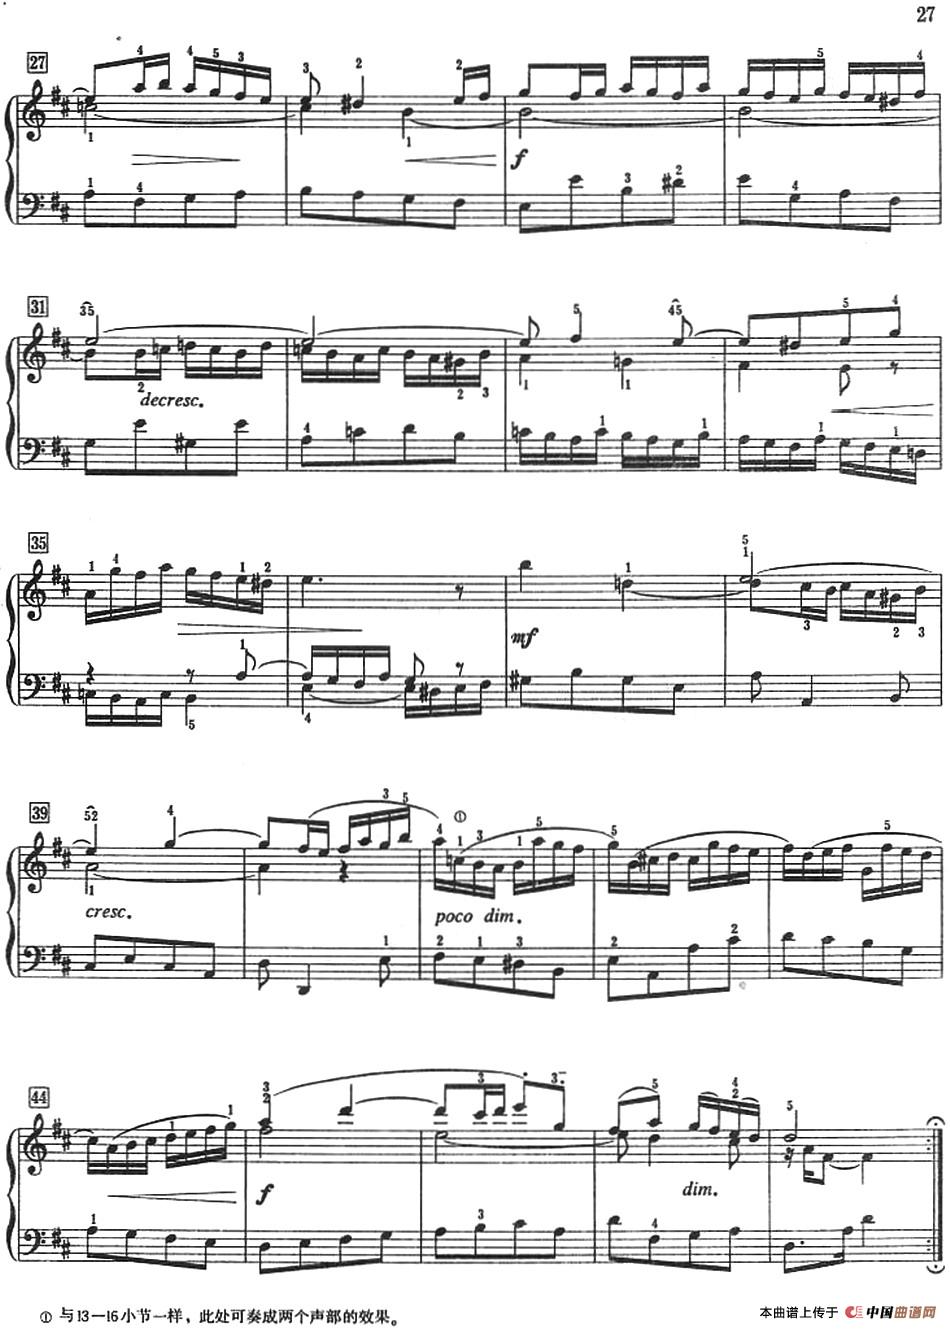 巴赫小前奏曲（NO.13-NO.16）(1)_-Bach Little Prelude and Fugue_页面_27.jpg